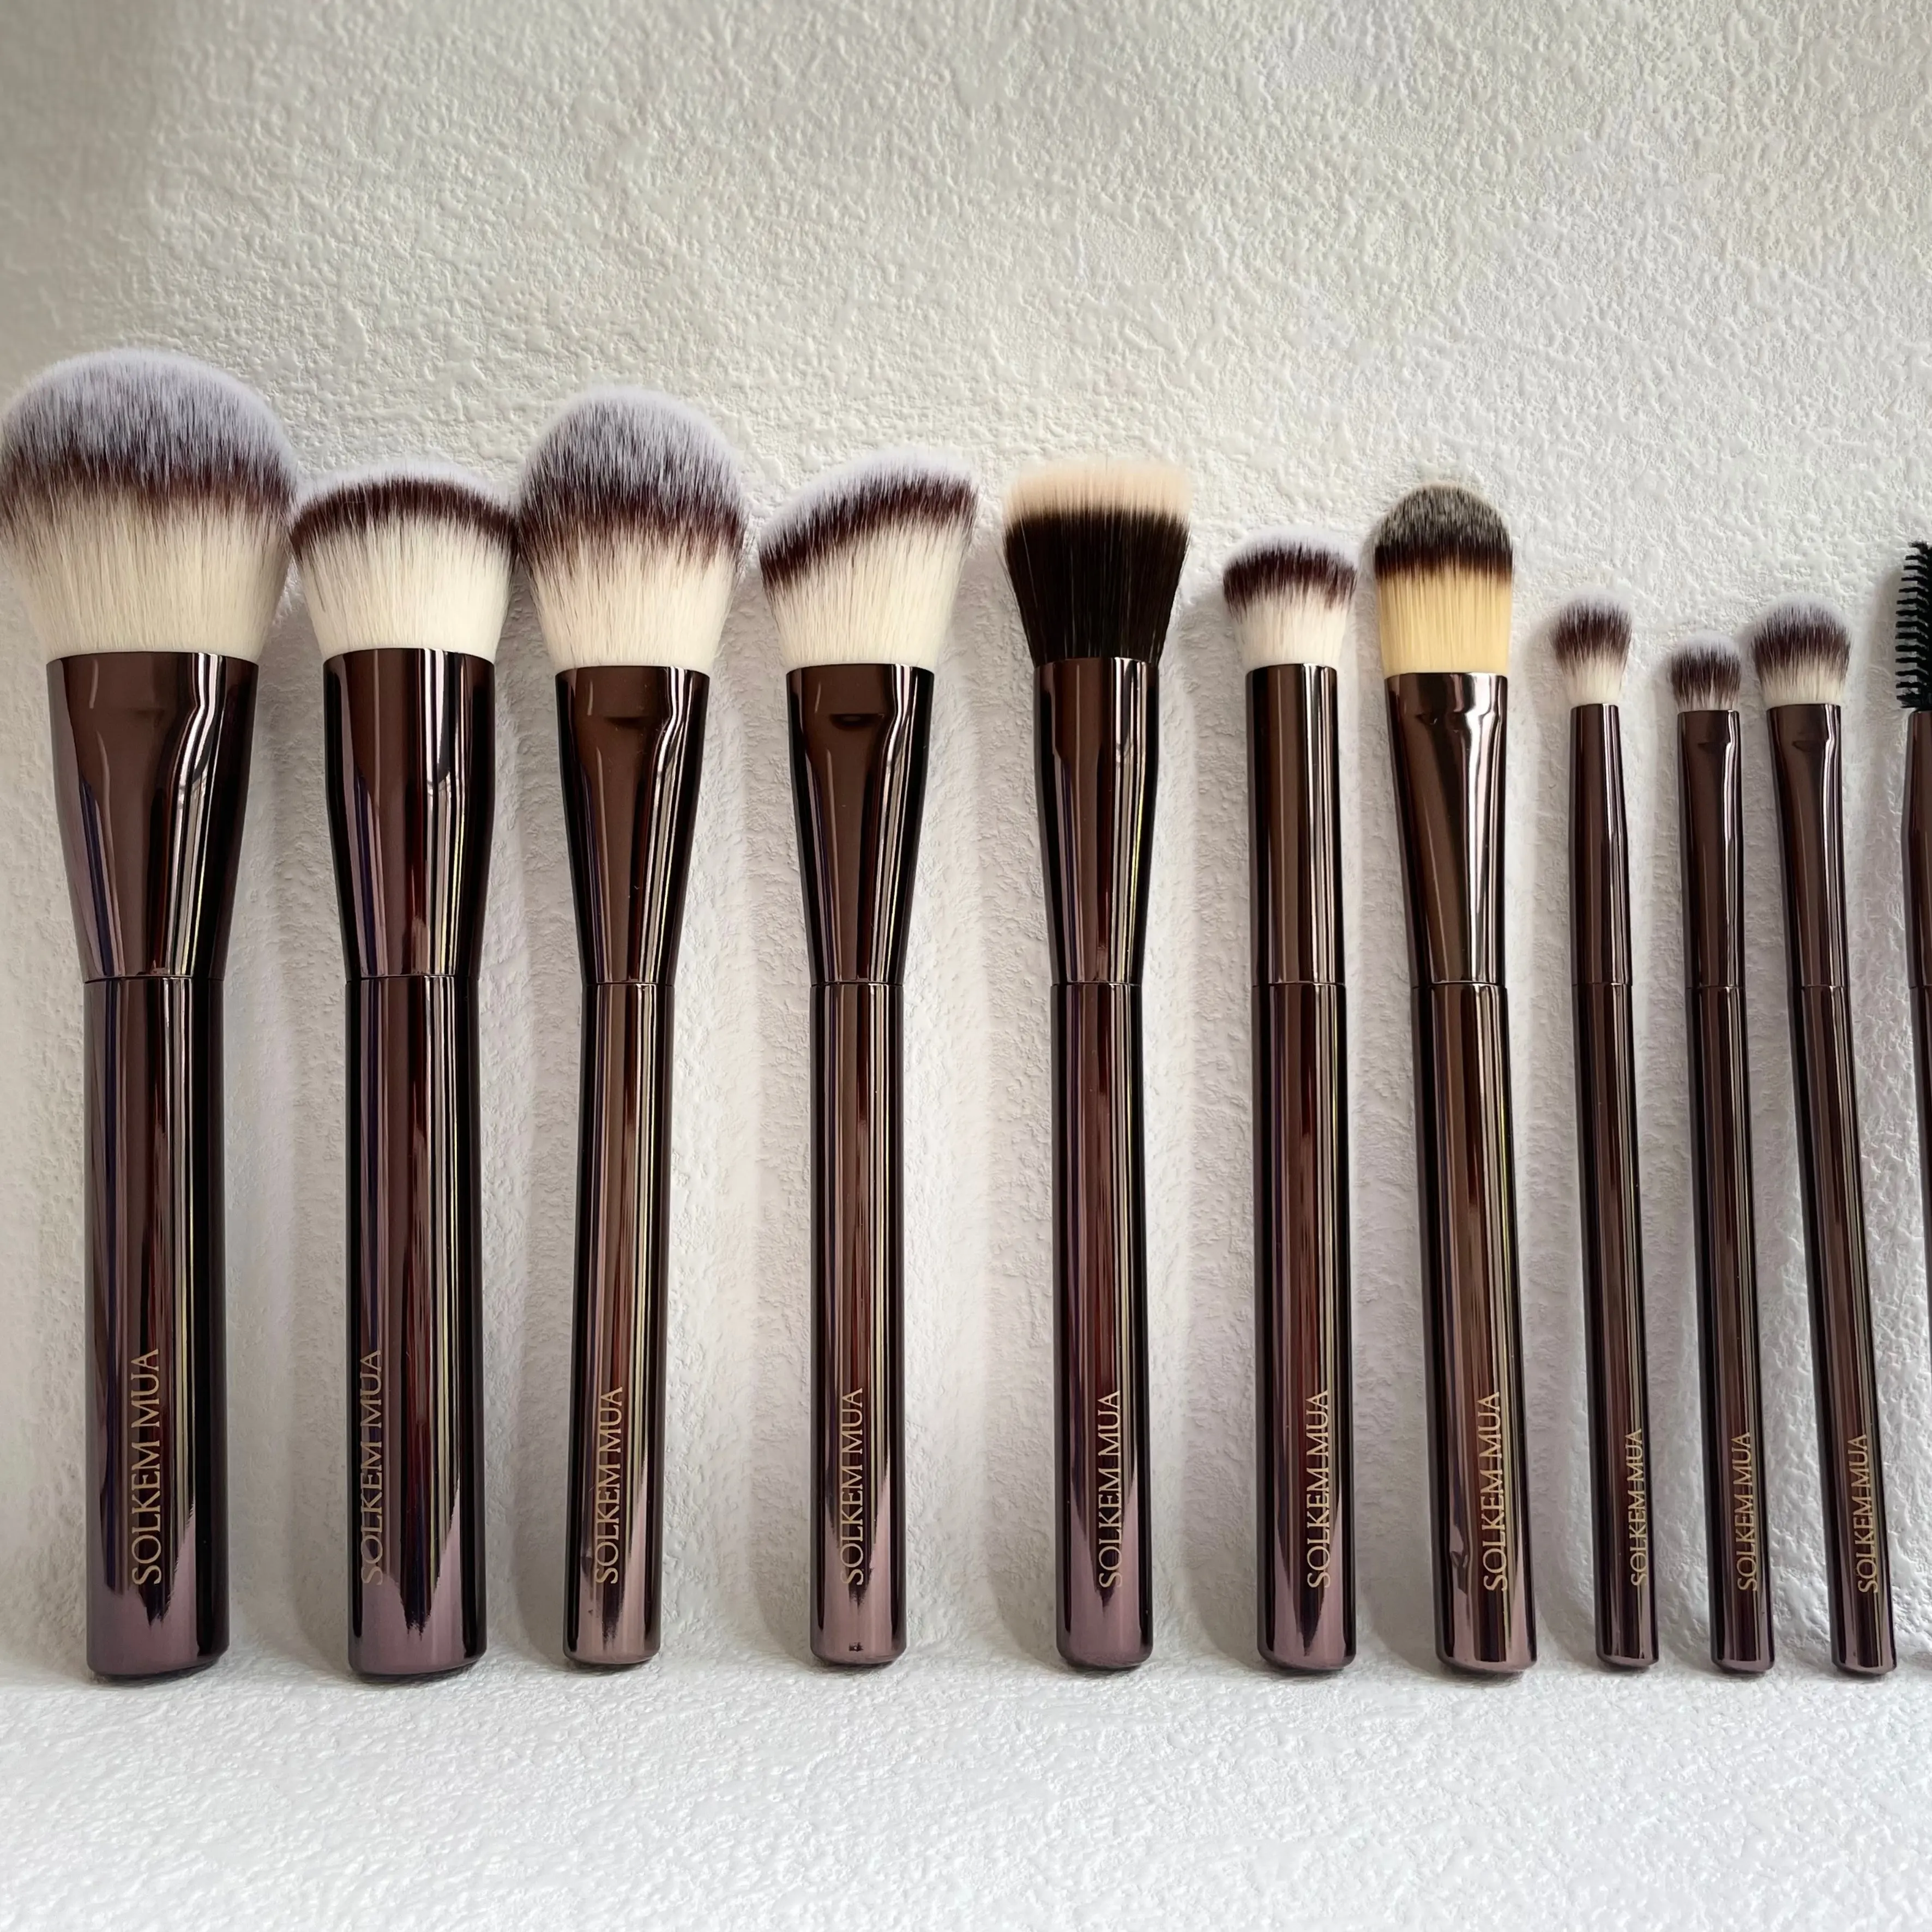 15 pinceaux professionnels de luxe haut de gamme à base brun bronzant personnalisés pour kit de beauté pour cheveux naturels végétaliens doux ensemble de pinceaux de maquillage